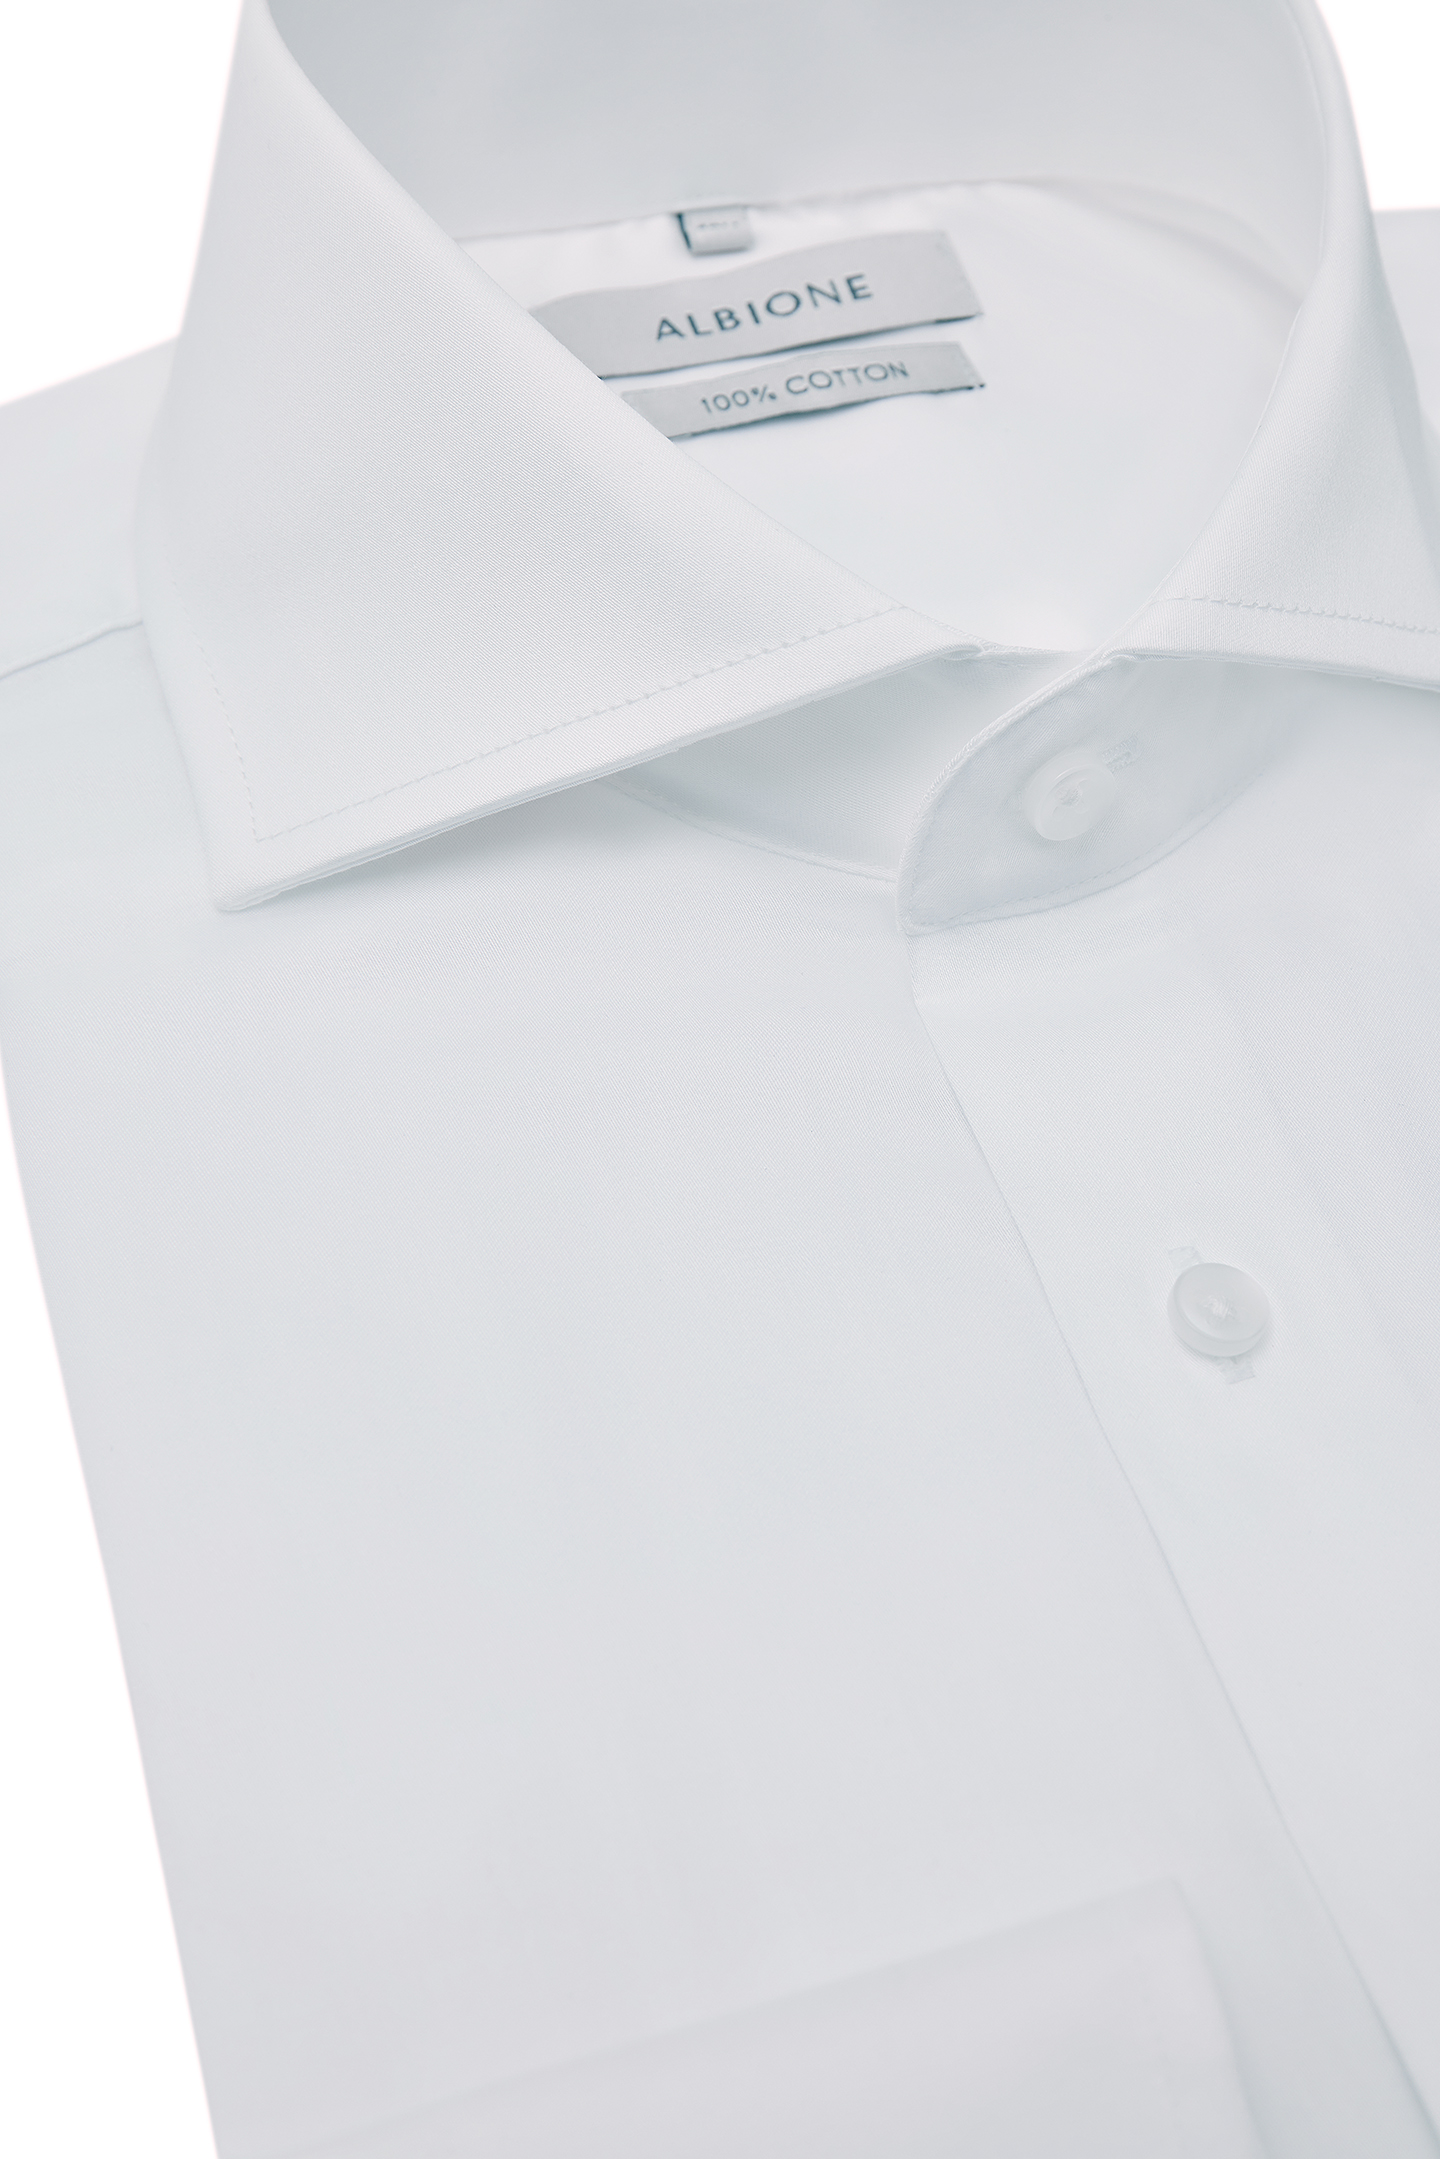 Сорочка Albione 591Sa, цвет белый, размер 46